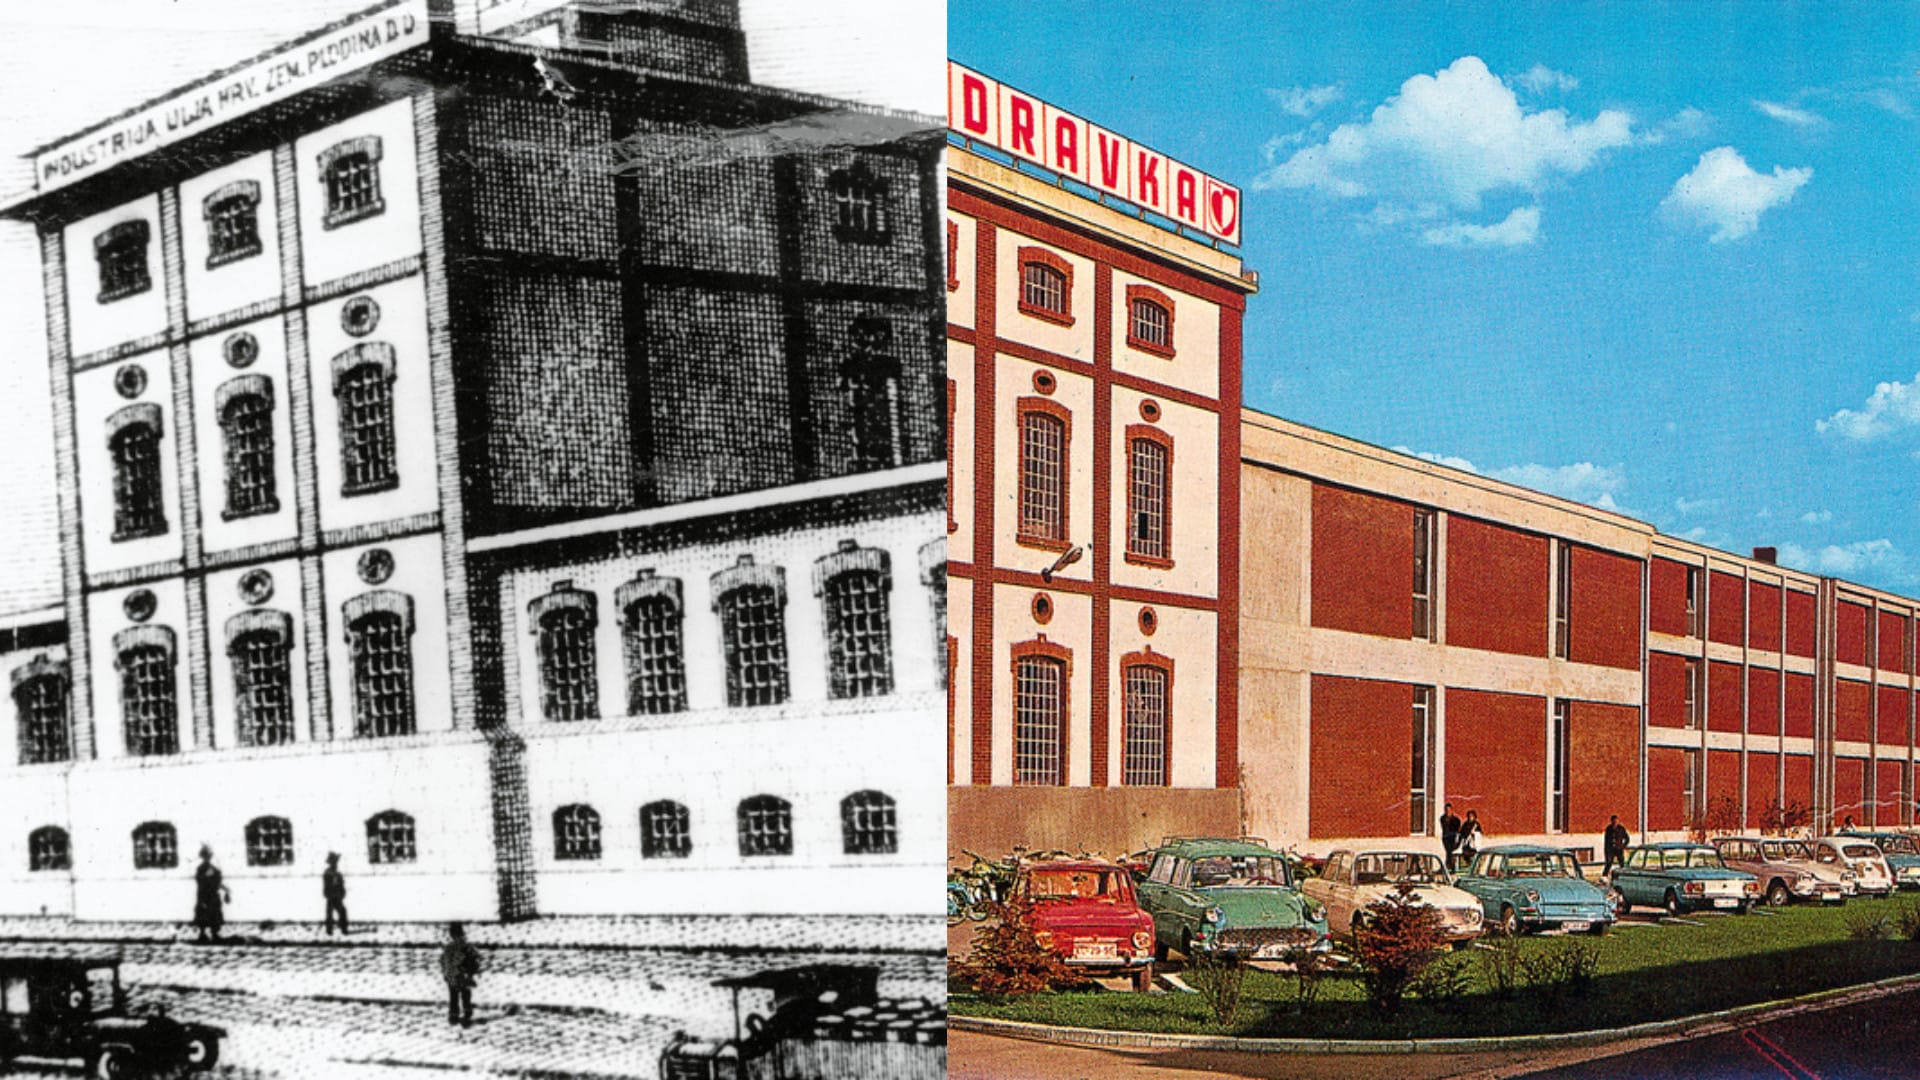 Podravka – Spoločnosť vznikla v chorvátskej Koprivnici, kde bratia Wolfovci začali v roku 1934 s predajom a spracovaním ovocia. Oficiálny názov Podravka získala spoločnosť v roku 1947.